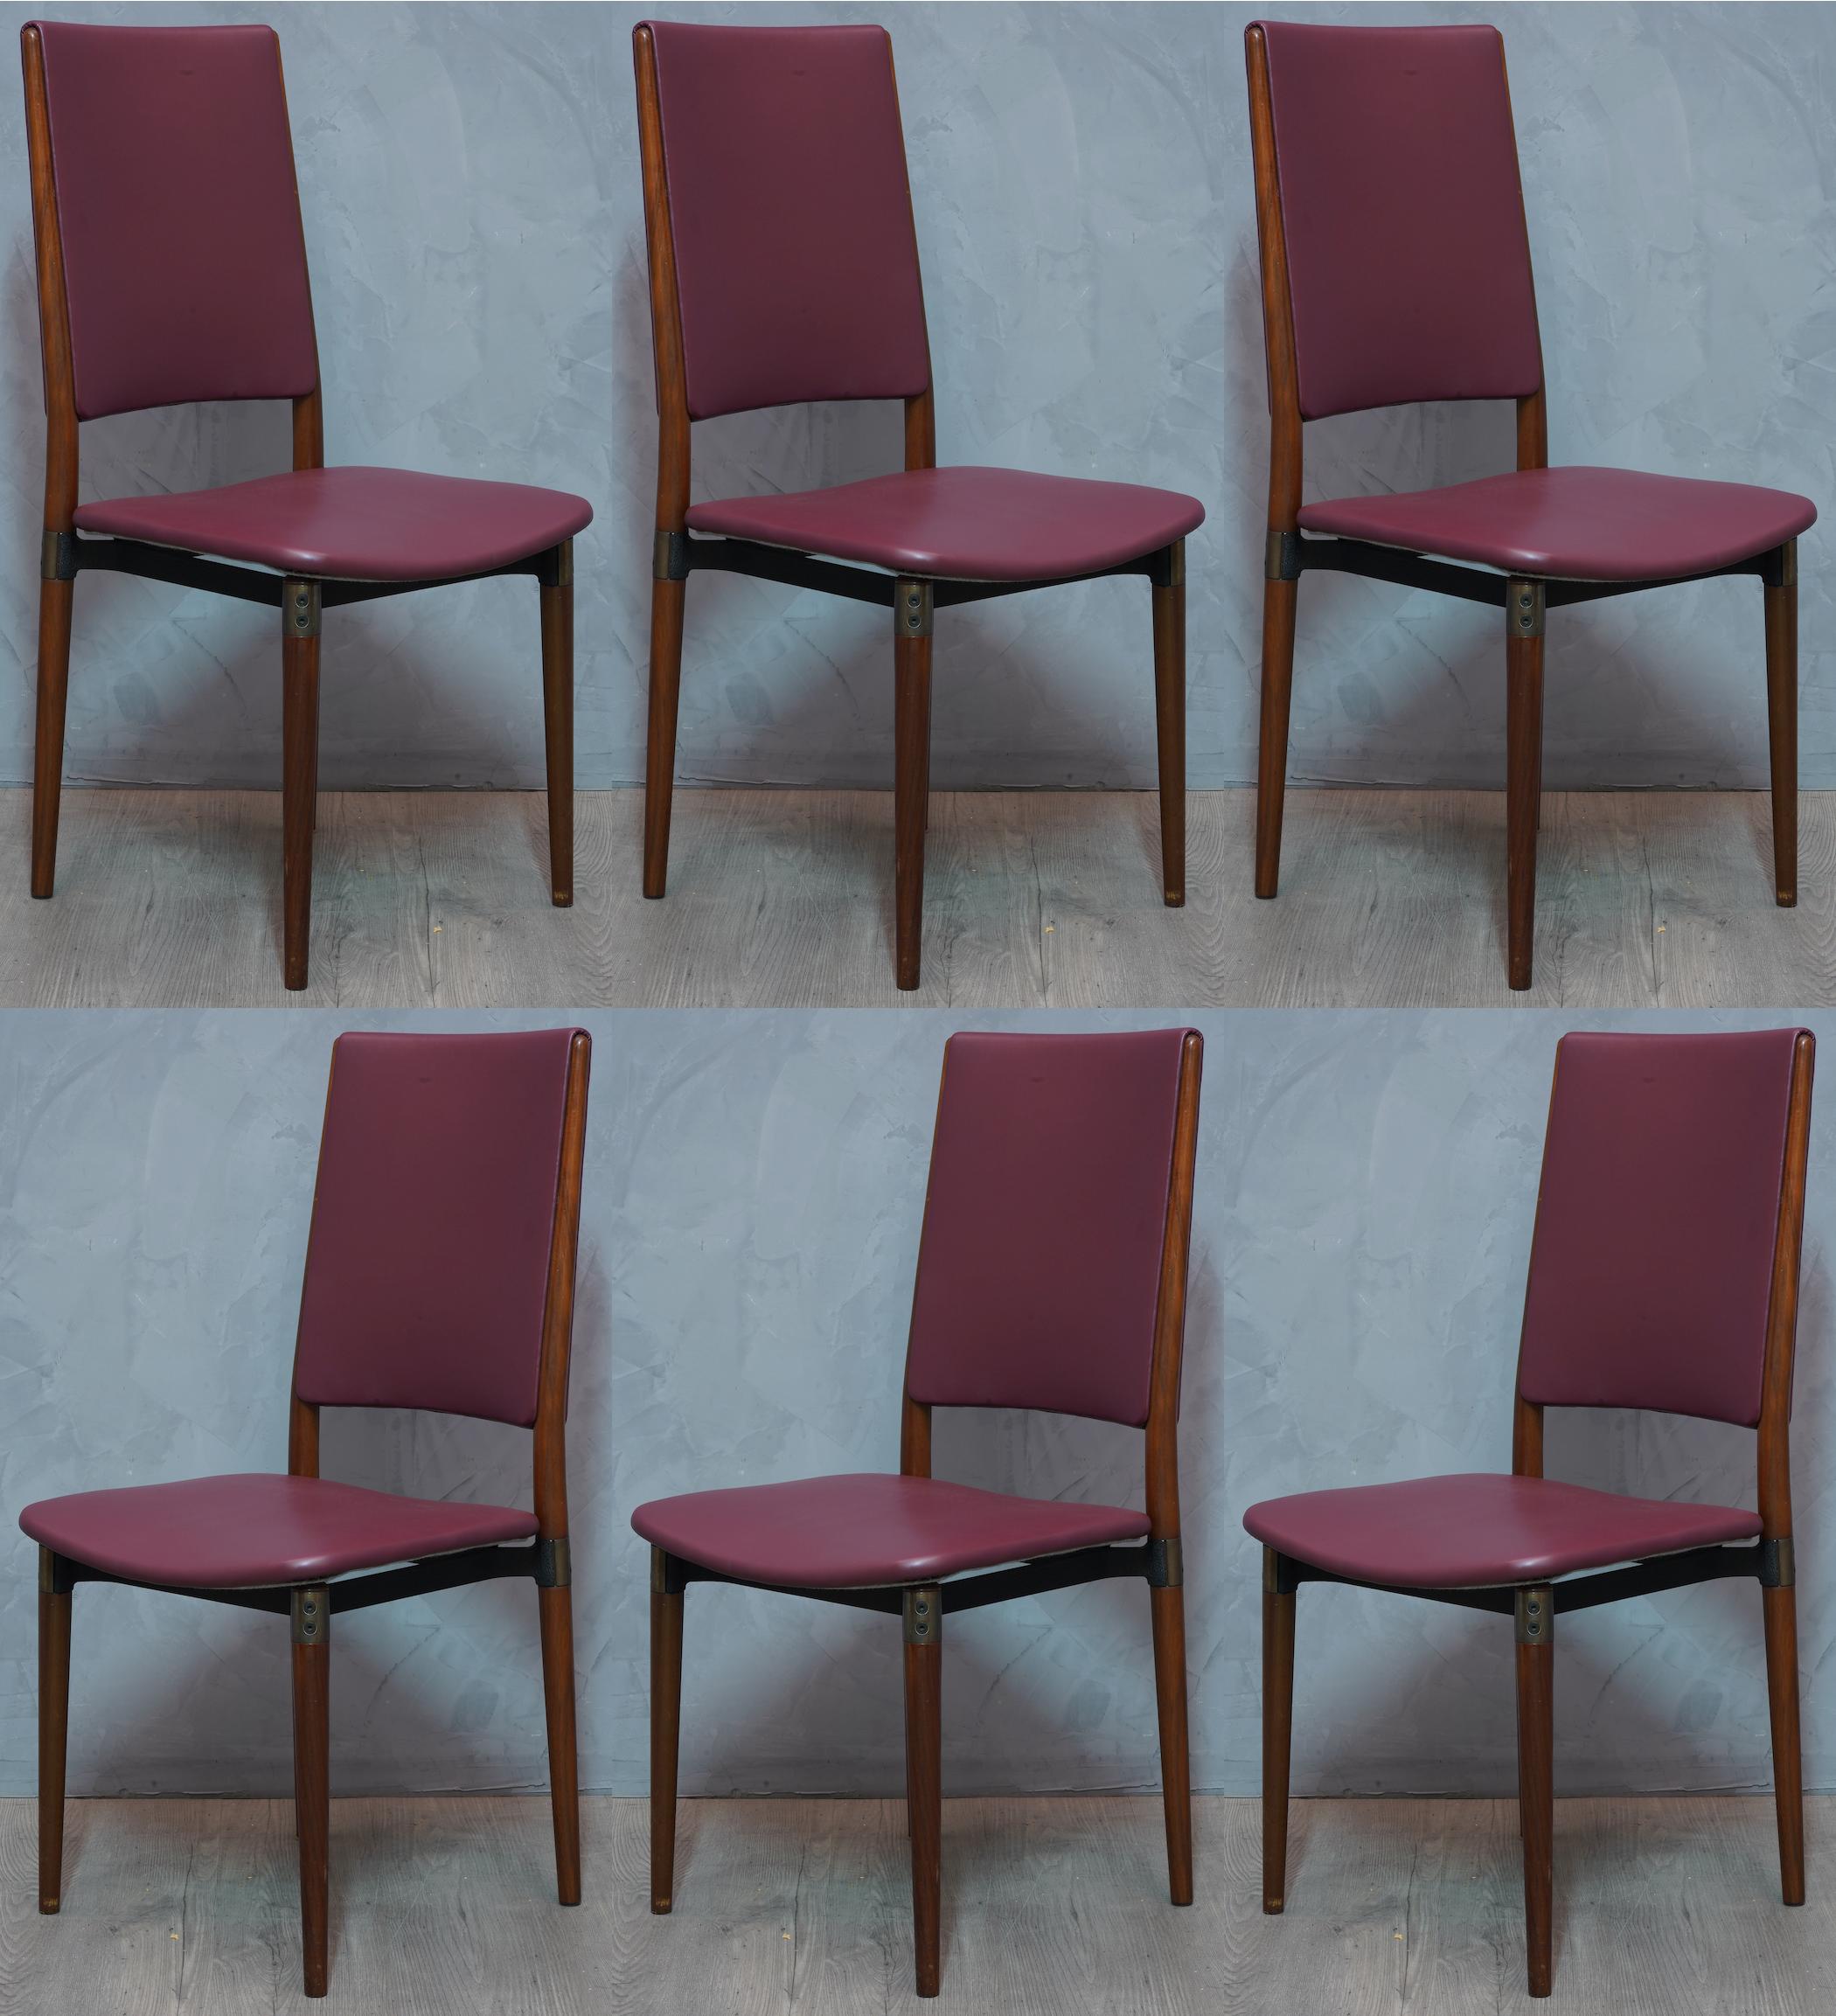 Einfache Struktur, aber viel Eleganz zu diesem Satz von 6 Stühlen des italienischen Designs der 1950er Jahre.

Sechs gestanzte Stühle von Osvaldo Borsani aus dem Jahr 1960. Alles in rotem Leder bezogen (das Leder ist original aus den Jahren), mit